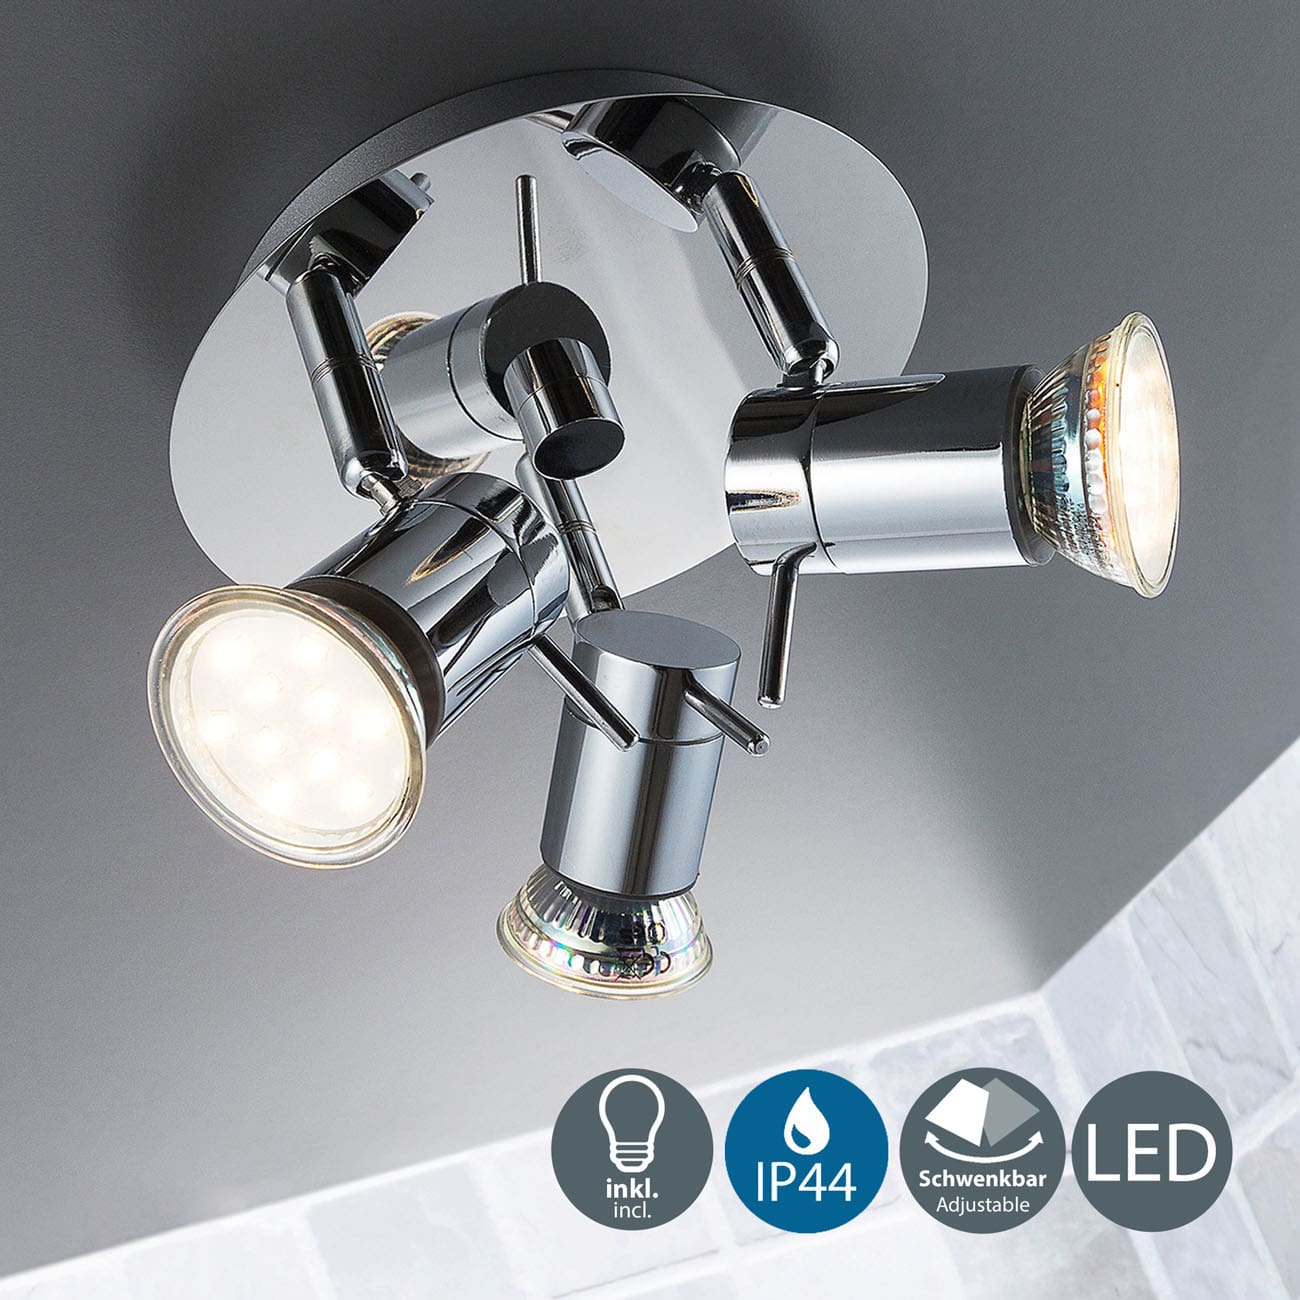 LED Bad-Deckenspot Ø16,5cm - 4-flammig - Badezimmer-Lampe IP44 230V GU10 9W 750lm warmweiß | Chrom - 3